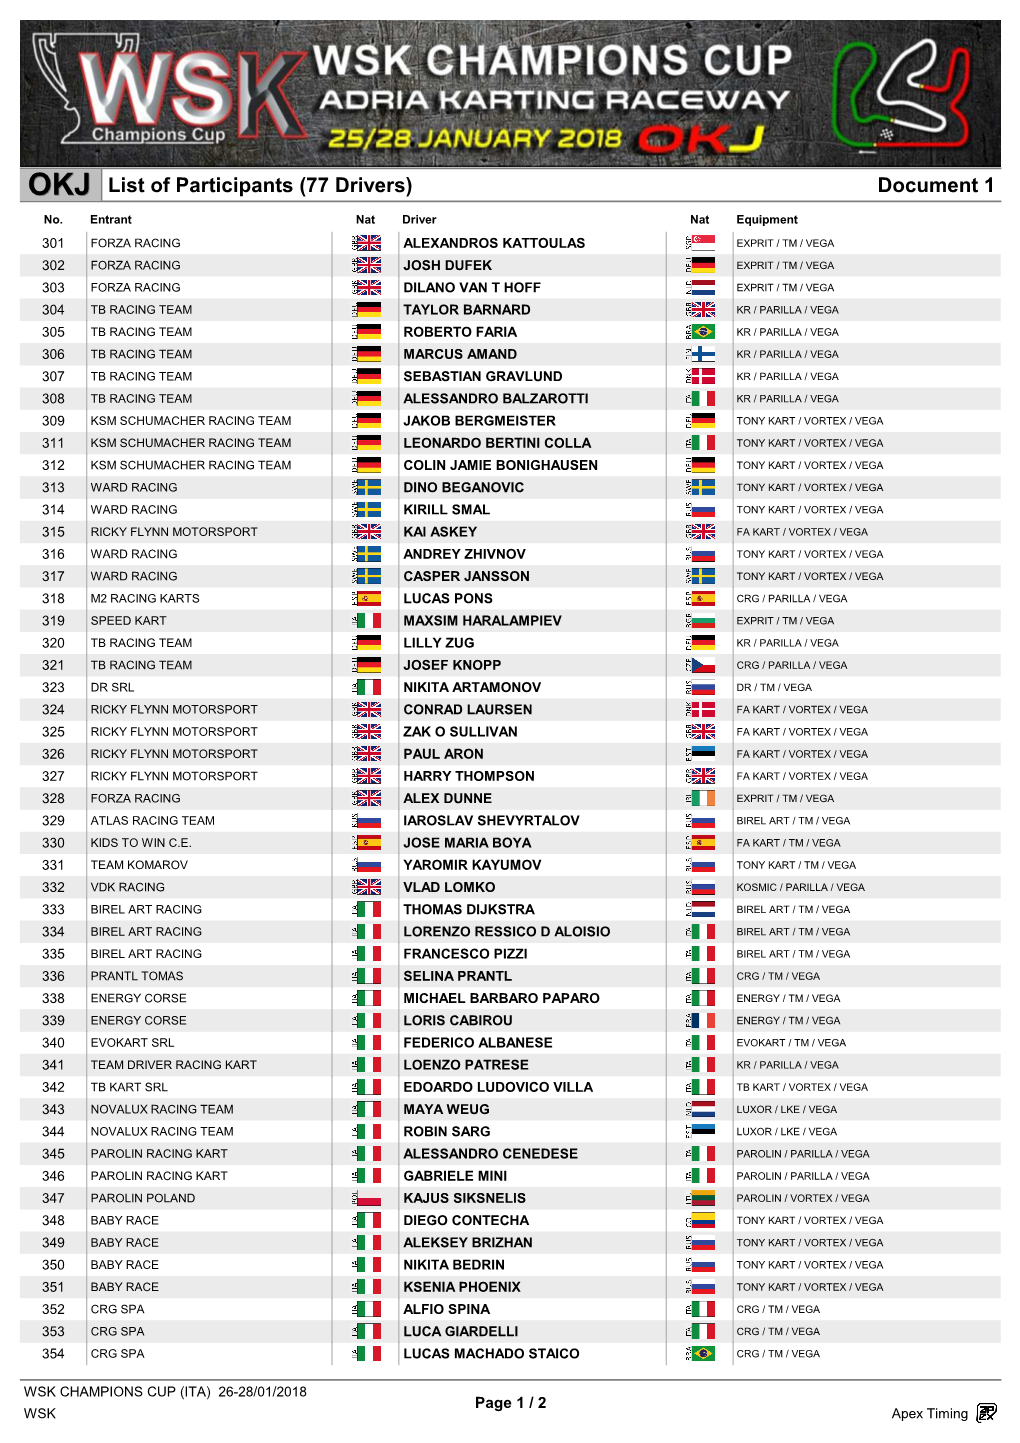 Document 1 List of Participants (77 Drivers)